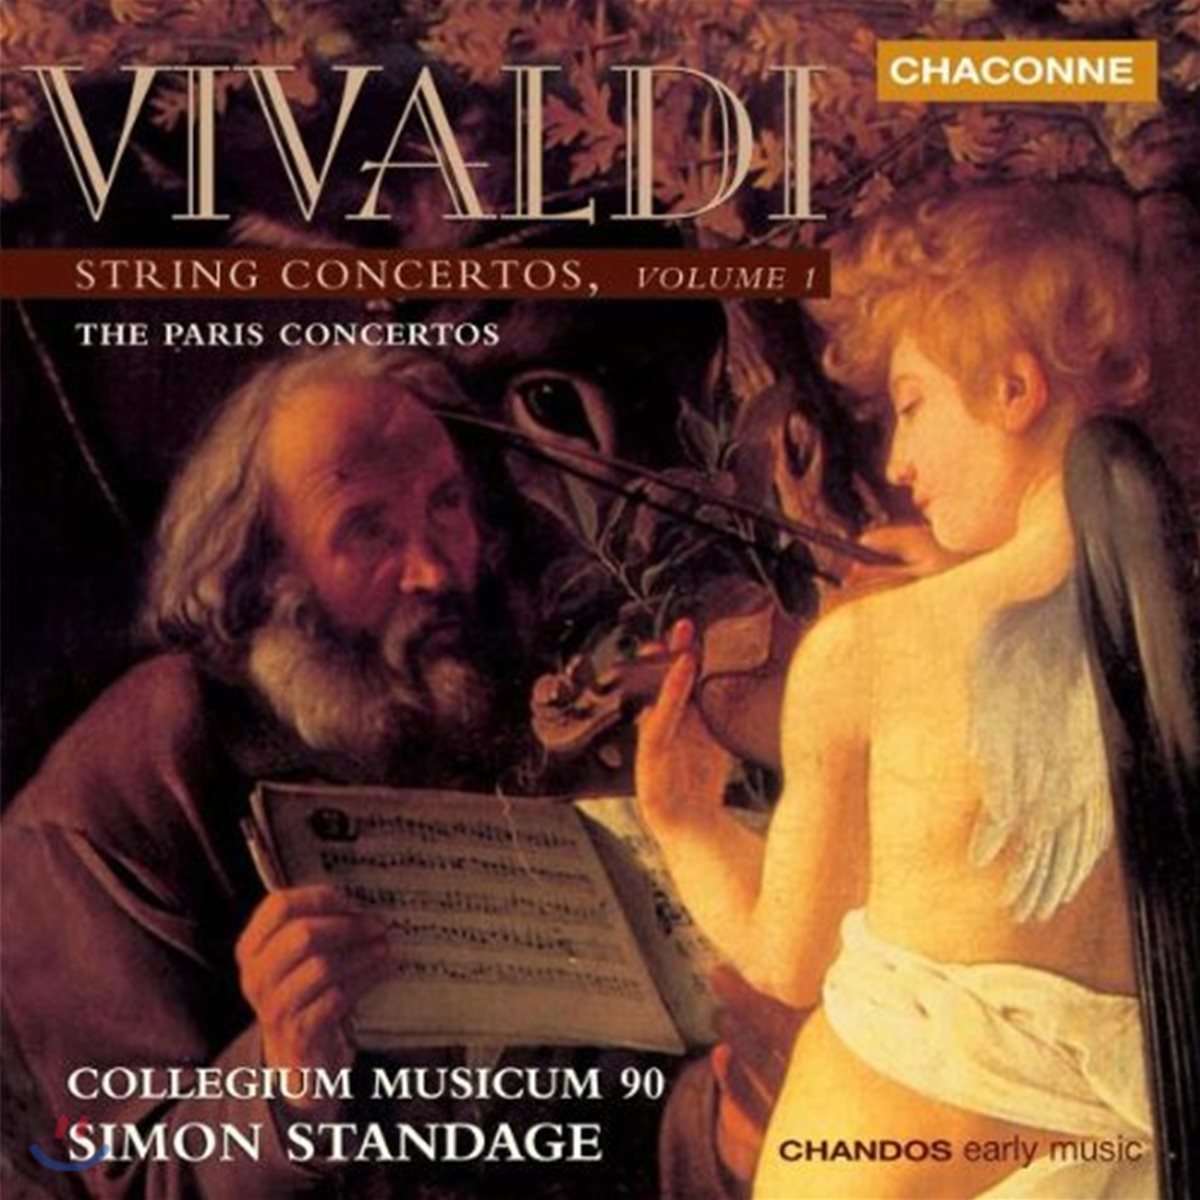 Collegium Musicum 90 비발디: 현악 협주곡 1권 - 파리 협주곡 (Vivaldi: String Concertos Vol.1: The Paris Concertos) 콜레기움 무지쿰 90, 사이먼 스탠데이지